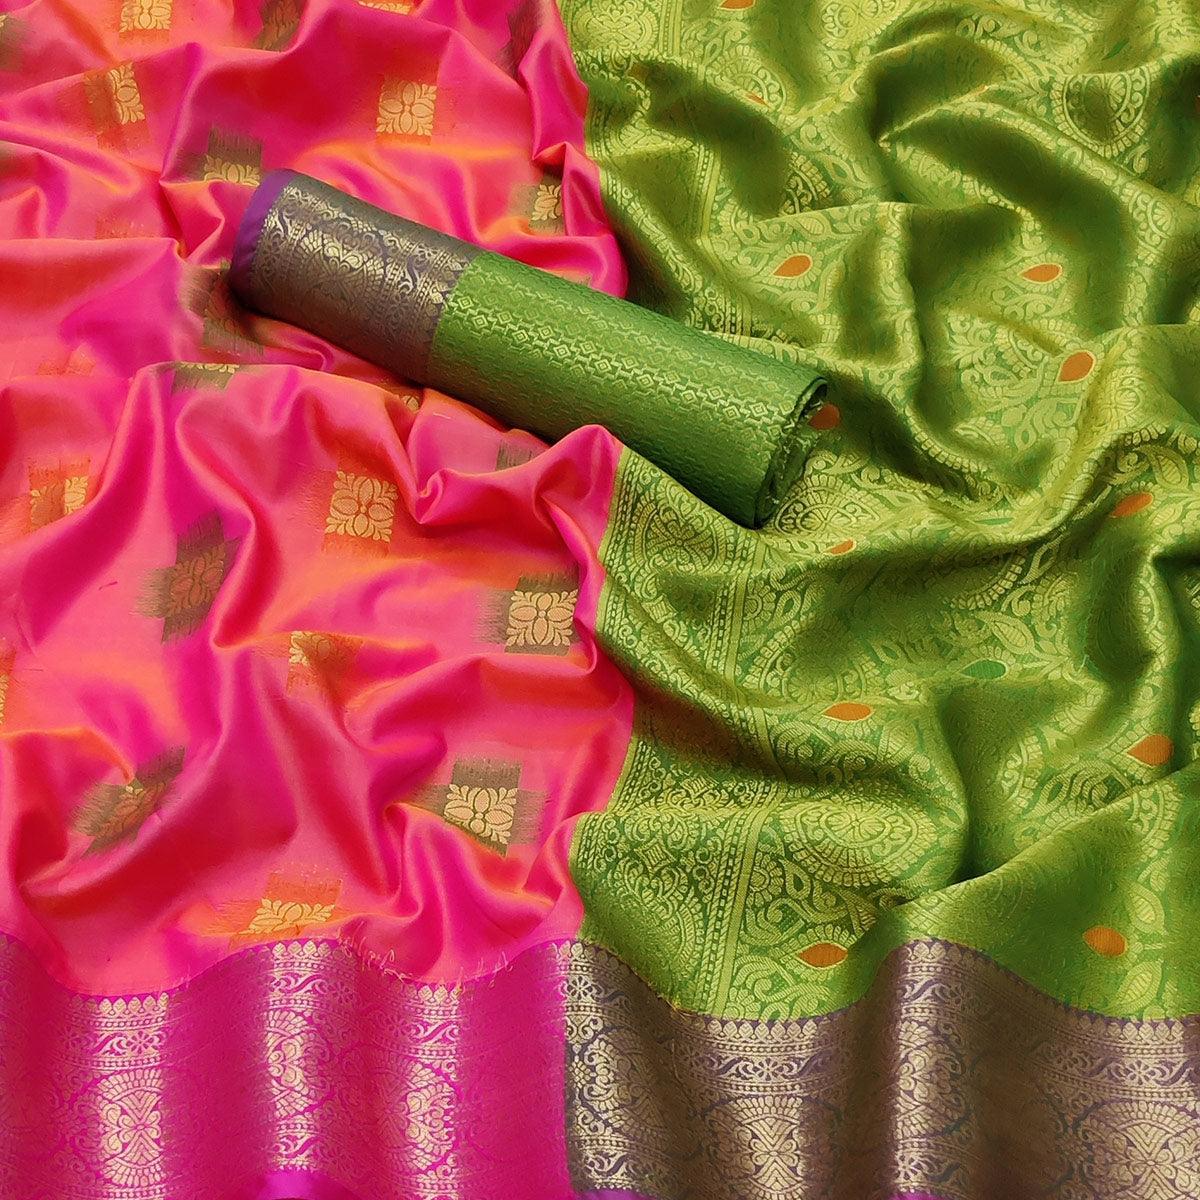 Rani Pink Festive Wear Woven Soft Banarasi Silk Saree - Peachmode